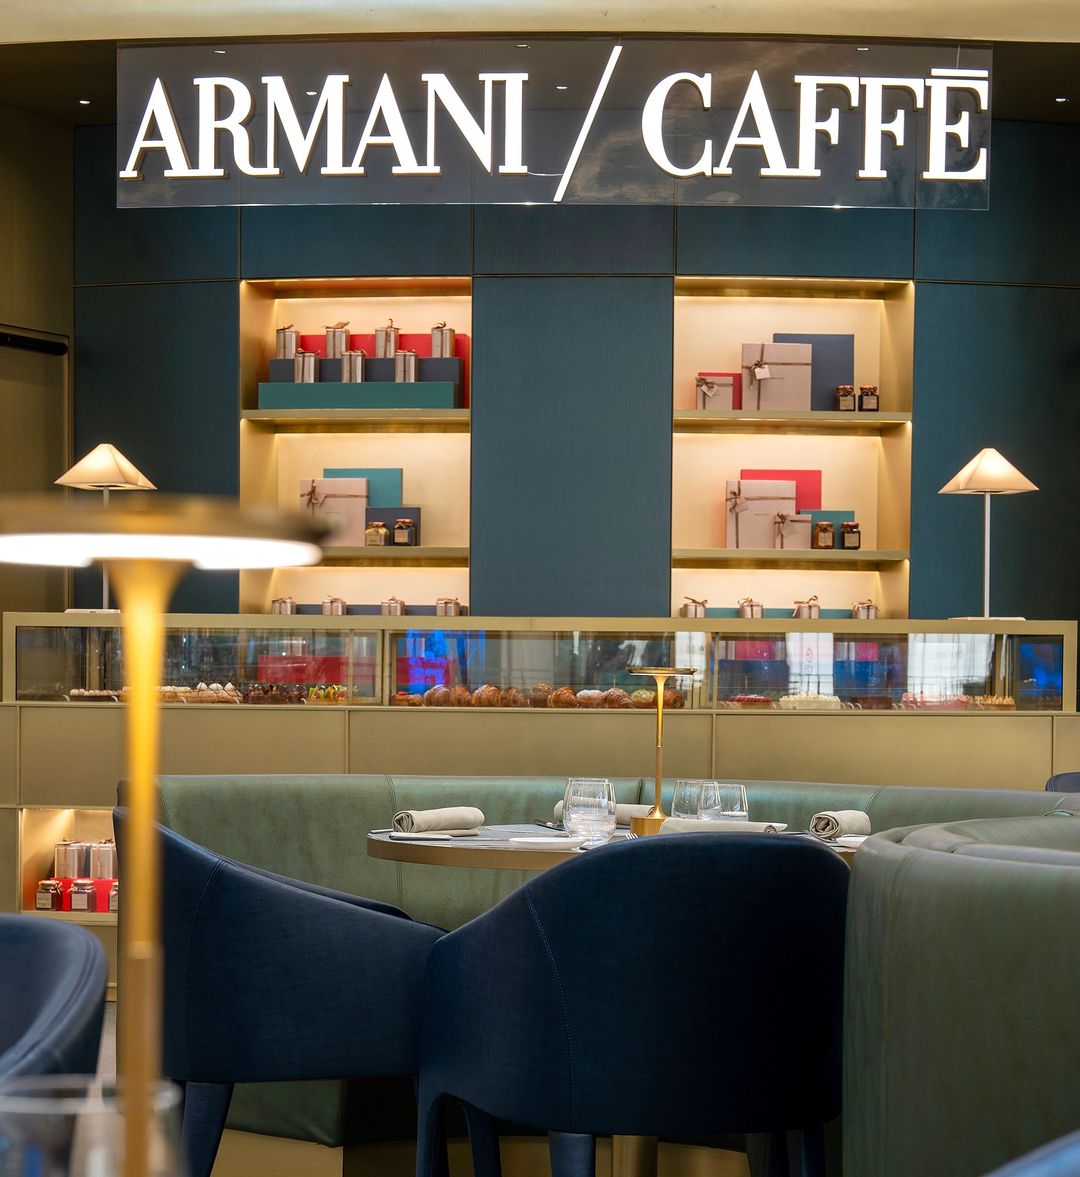 Armani/Cafe